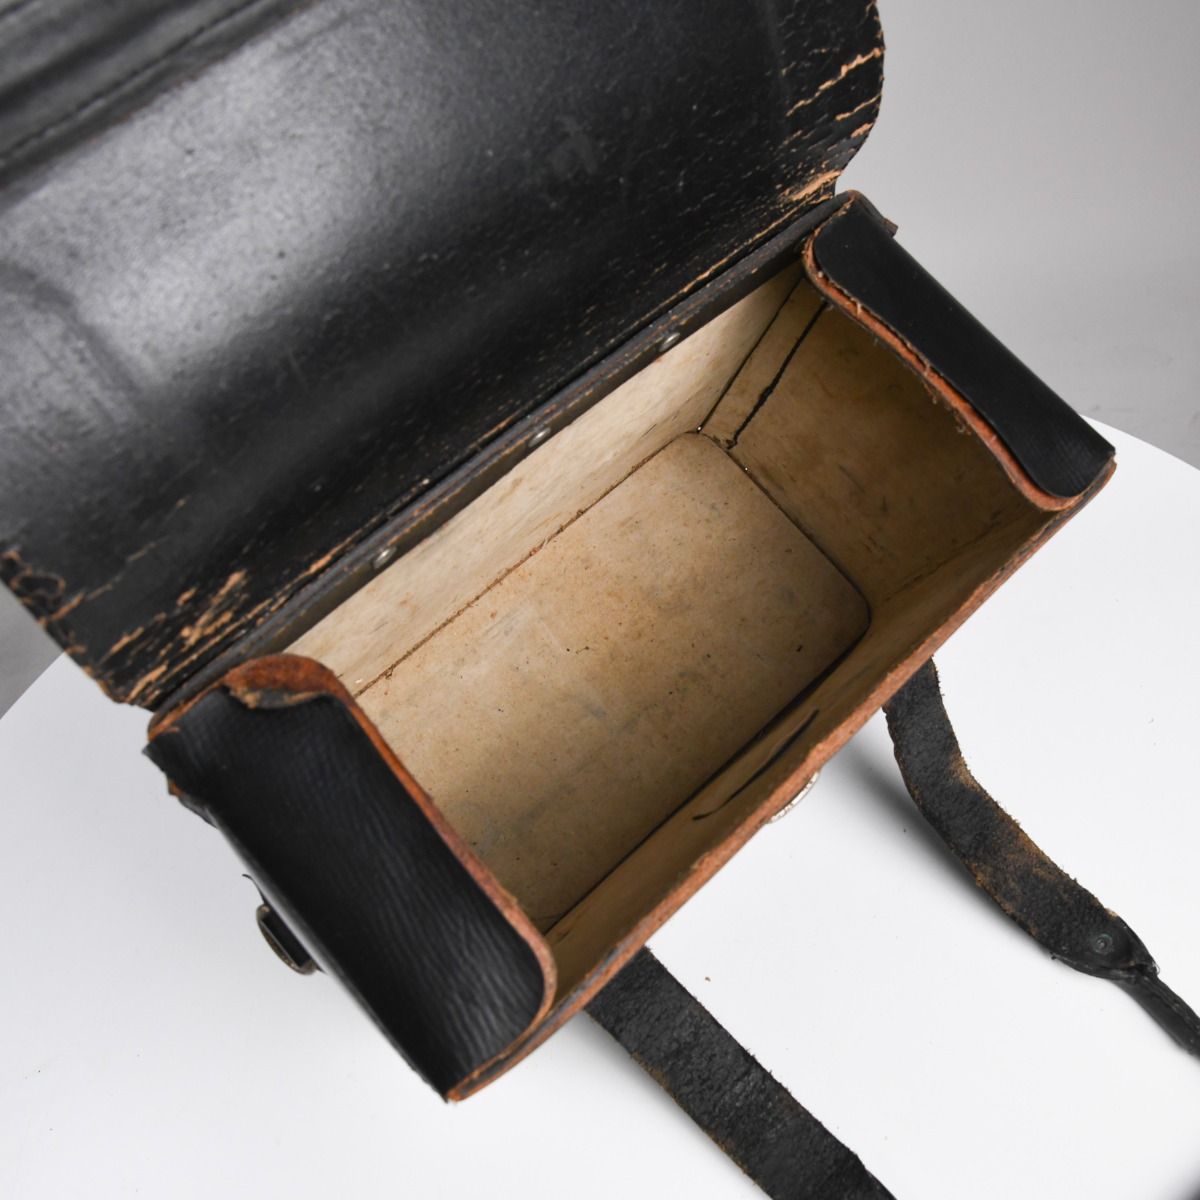 Vintage Homa Mid Century Rubberised Leather Tool Bag / Case